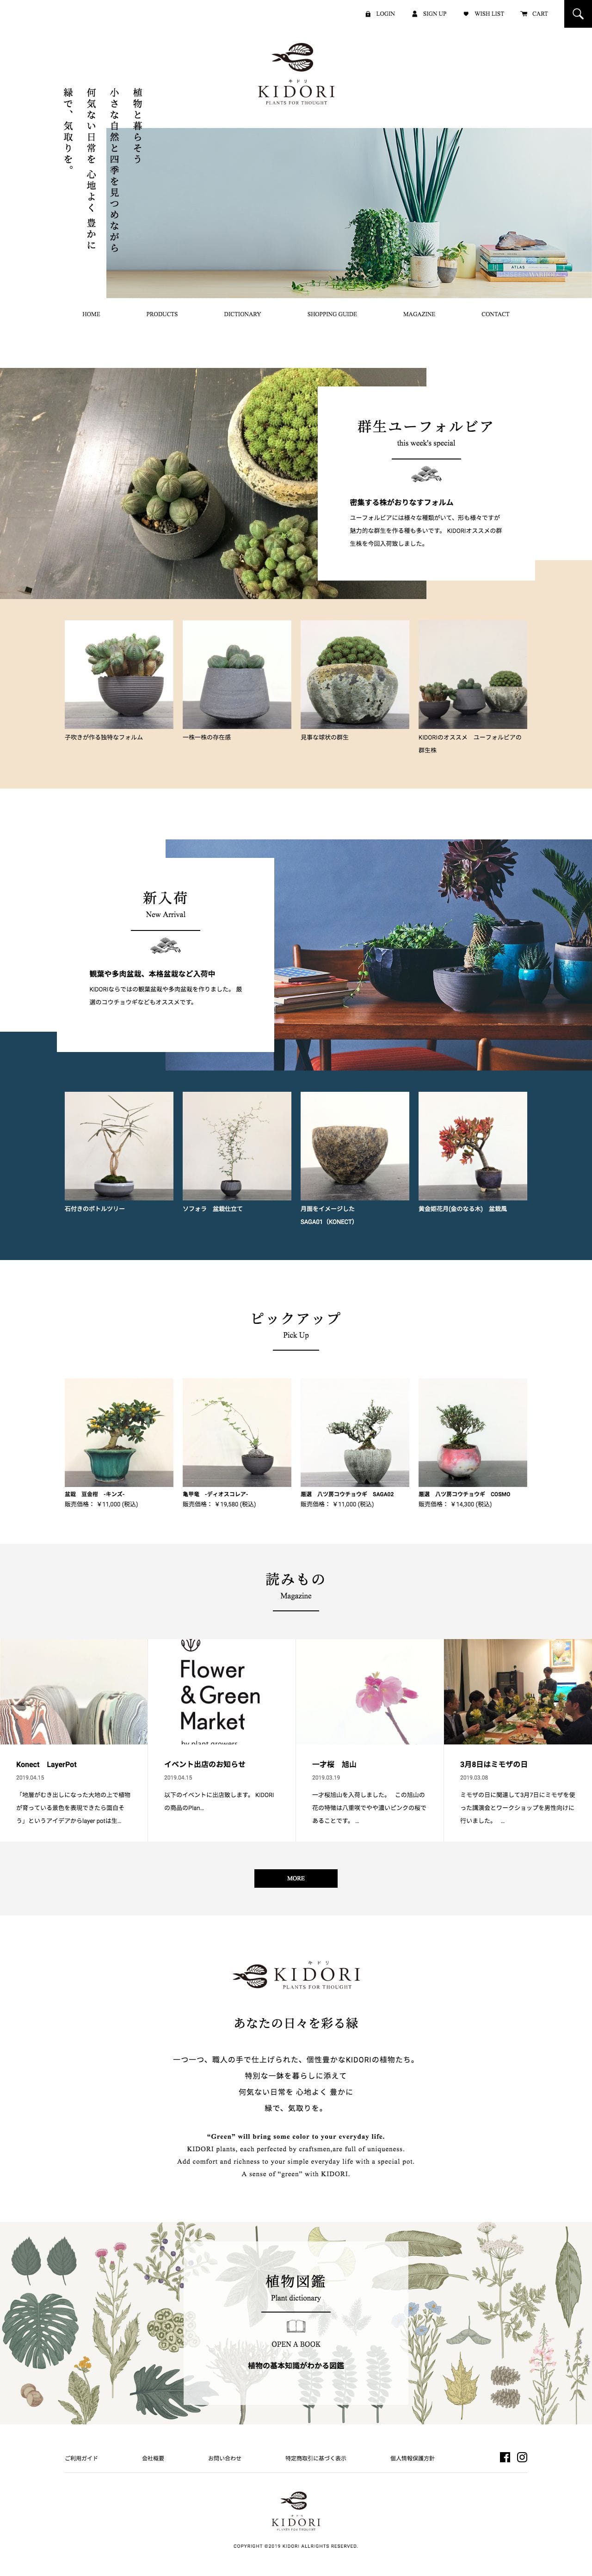 盆栽、多肉植物、塊根植物、観葉植物通販/KIDORI -キドリ-のスクリーンショット - トップページ